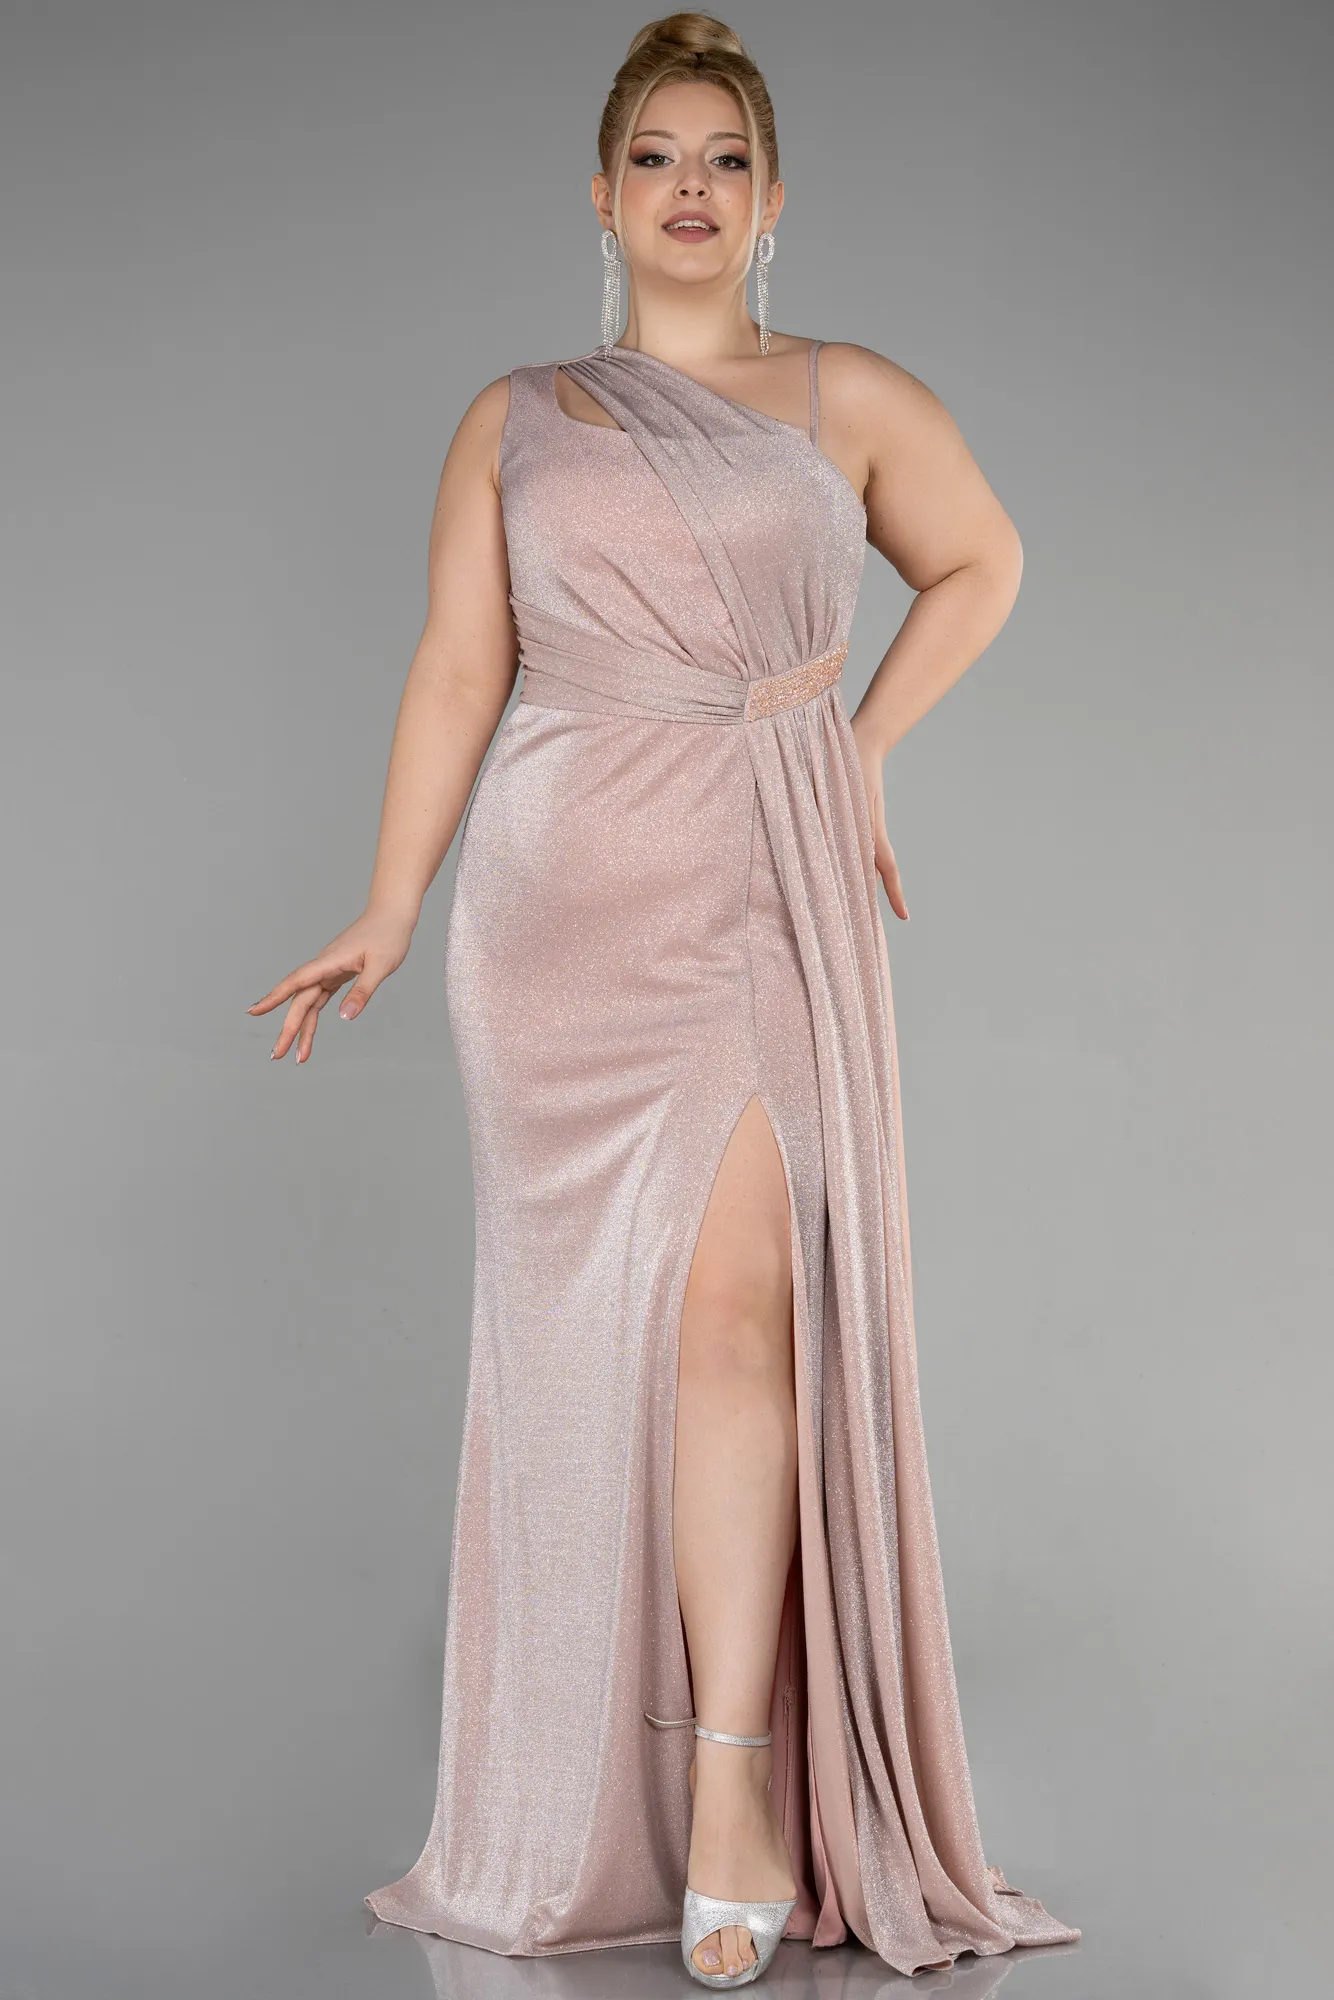 Powder Color-Long Formal Plus Size Dress ABU3639